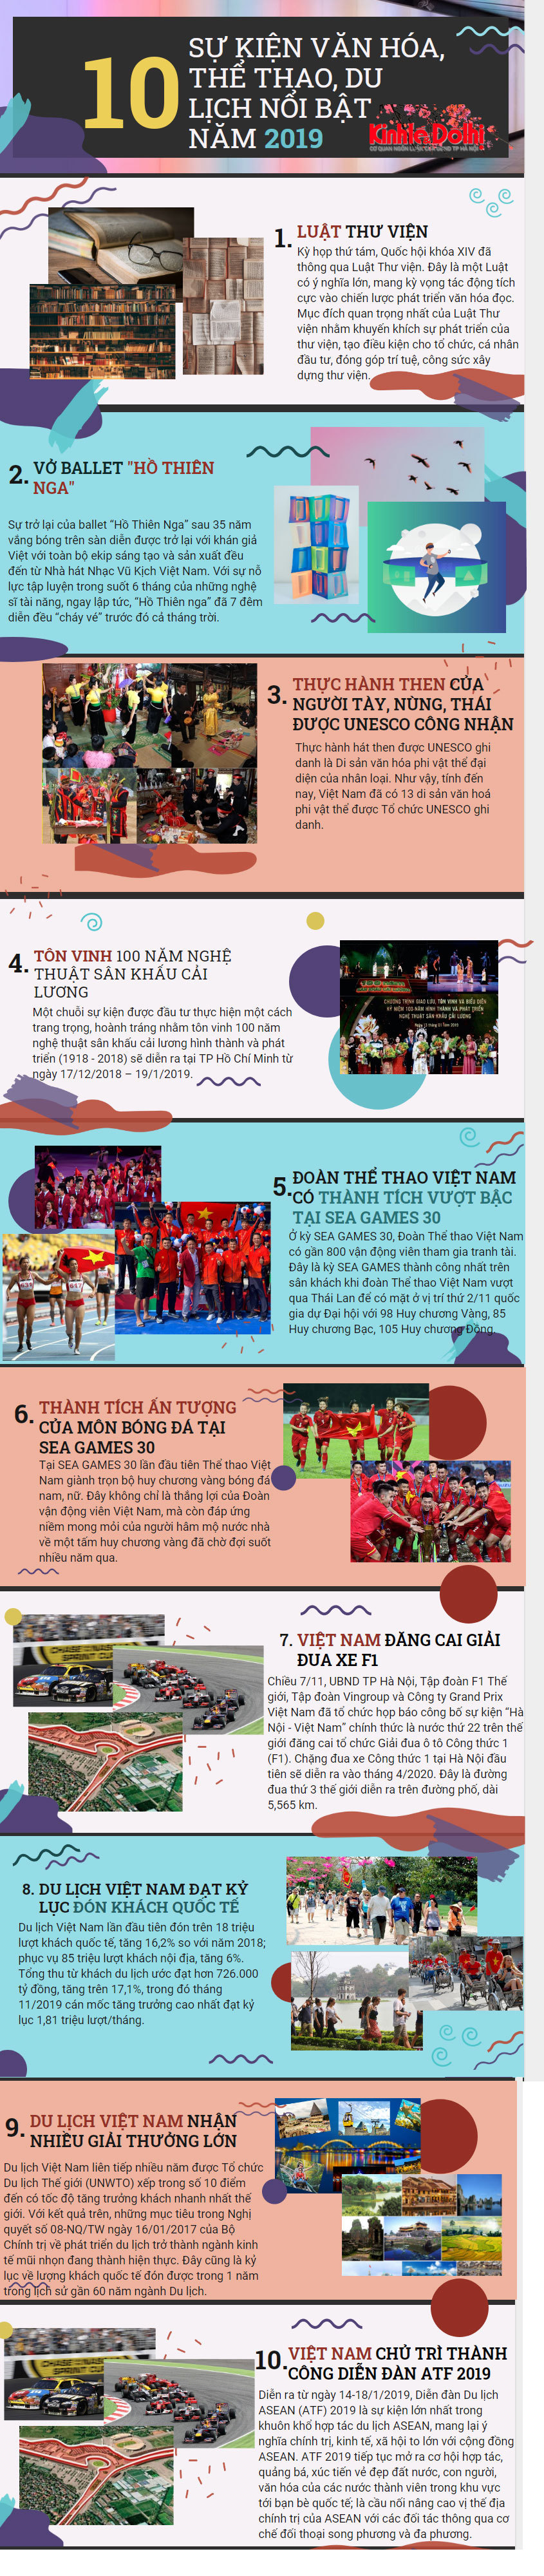 [Infographics] 10 sự kiện văn hóa, thể thao và du lịch nổi bật năm 2019 - Ảnh 1